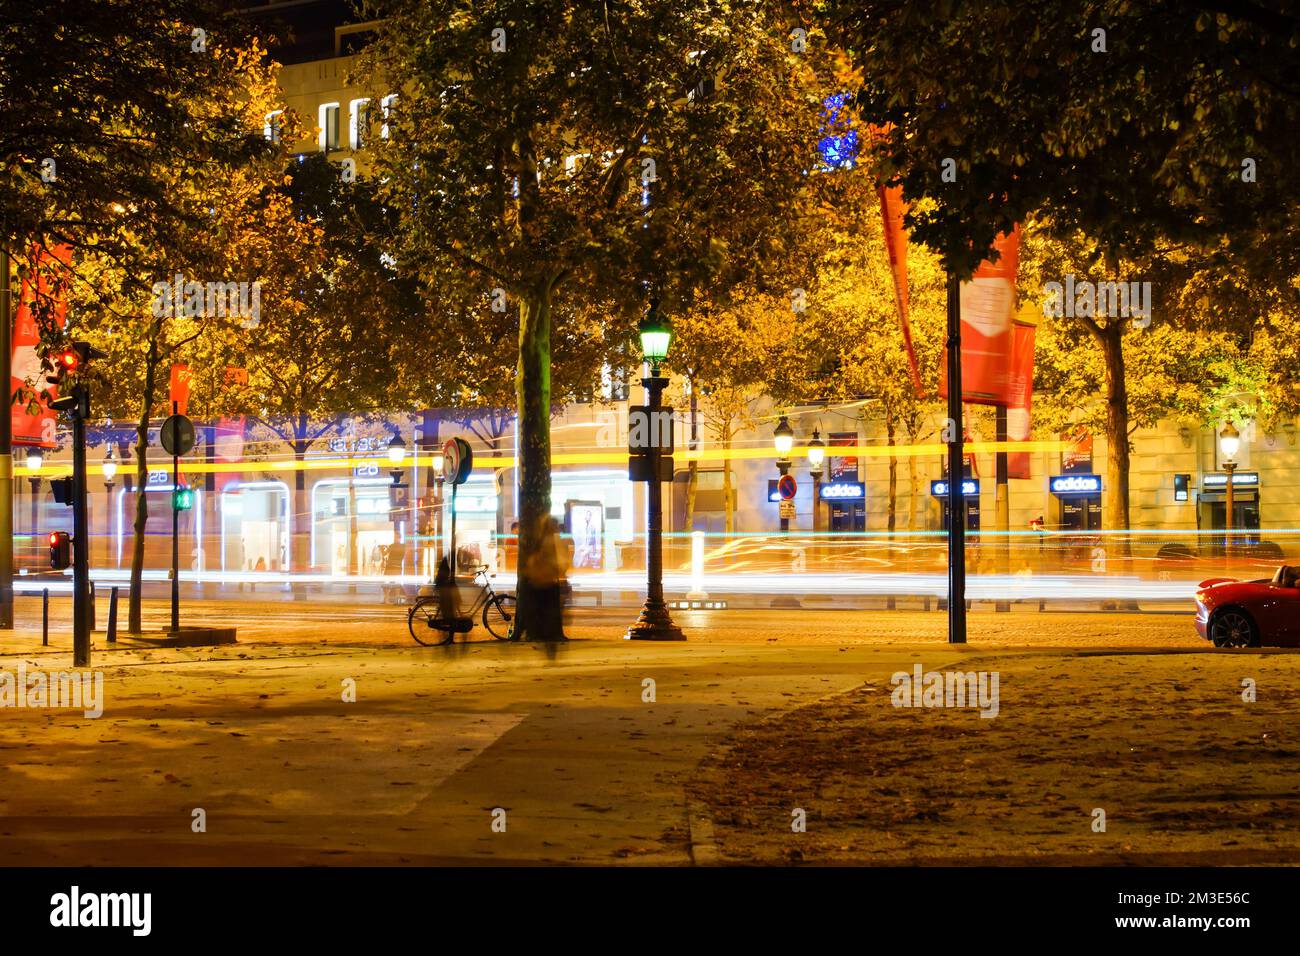 PARIS - 07. September: Paris bei Nacht am 07. September 2014 in Paris, Frankreich. Nacht Paris hat magische Atmosphäre, ohne die jede Reise nach Paris inco wäre Stockfoto